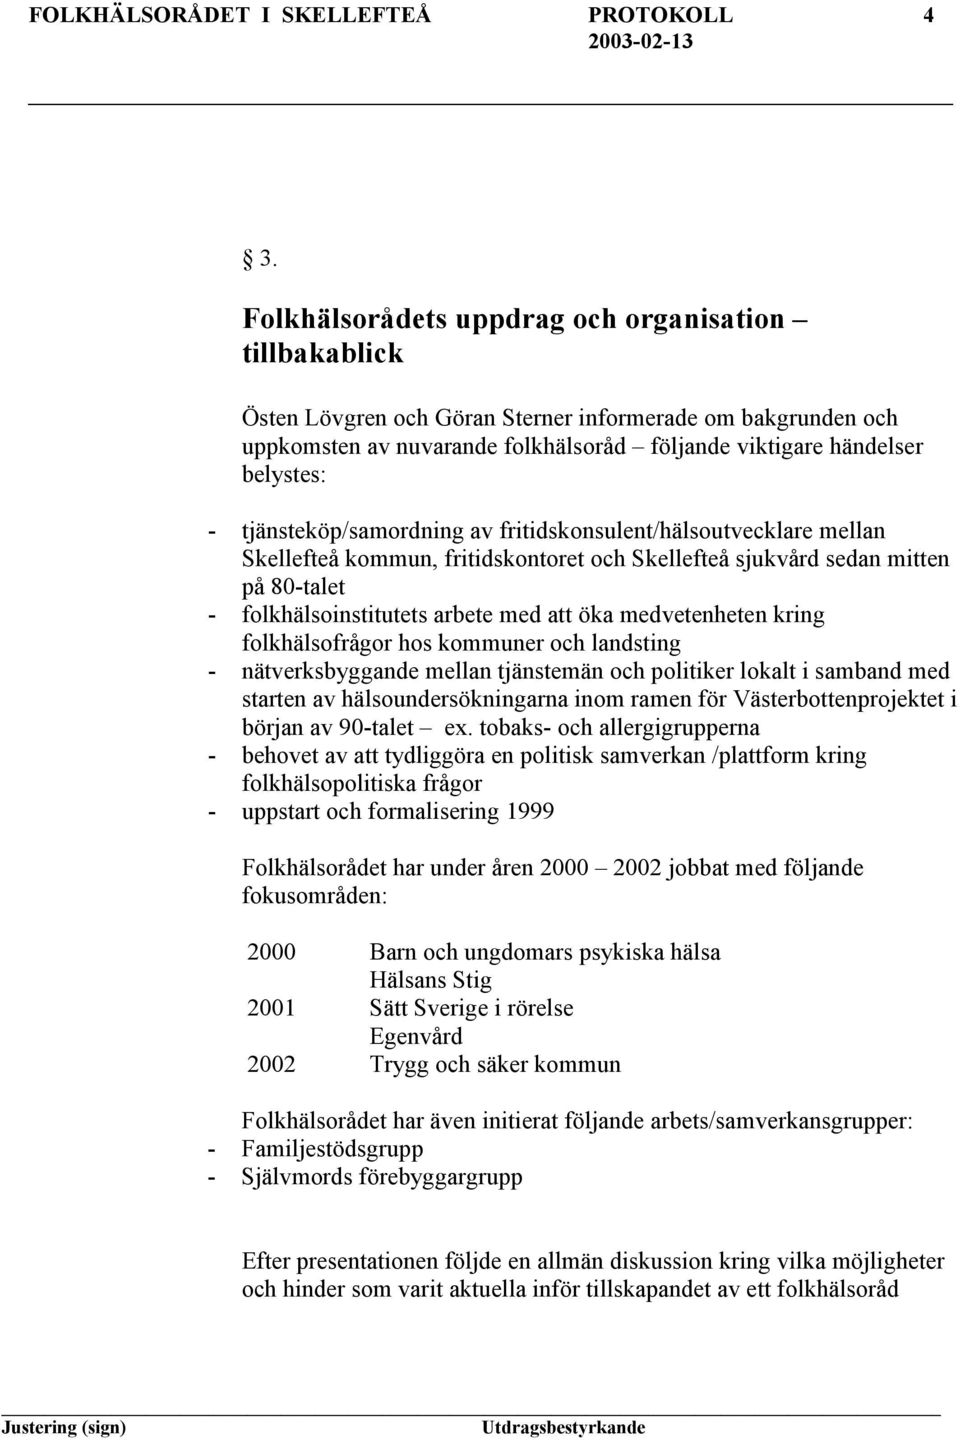 tjänsteköp/samordning av fritidskonsulent/hälsoutvecklare mellan Skellefteå kommun, fritidskontoret och Skellefteå sjukvård sedan mitten på 80-talet - folkhälsoinstitutets arbete med öka